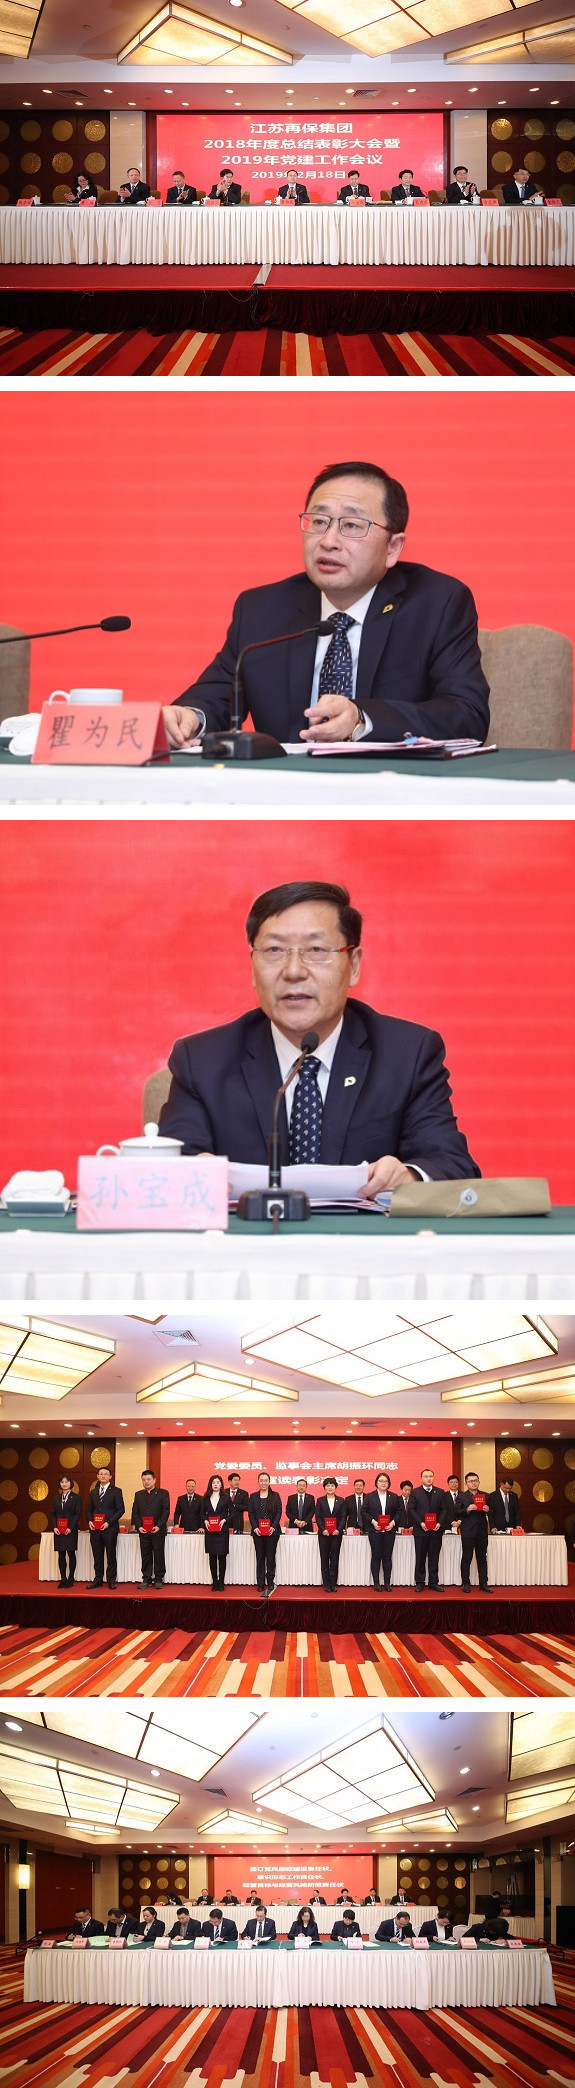 江苏再保集团召开2018年度总结表彰暨2019年党建工作会议